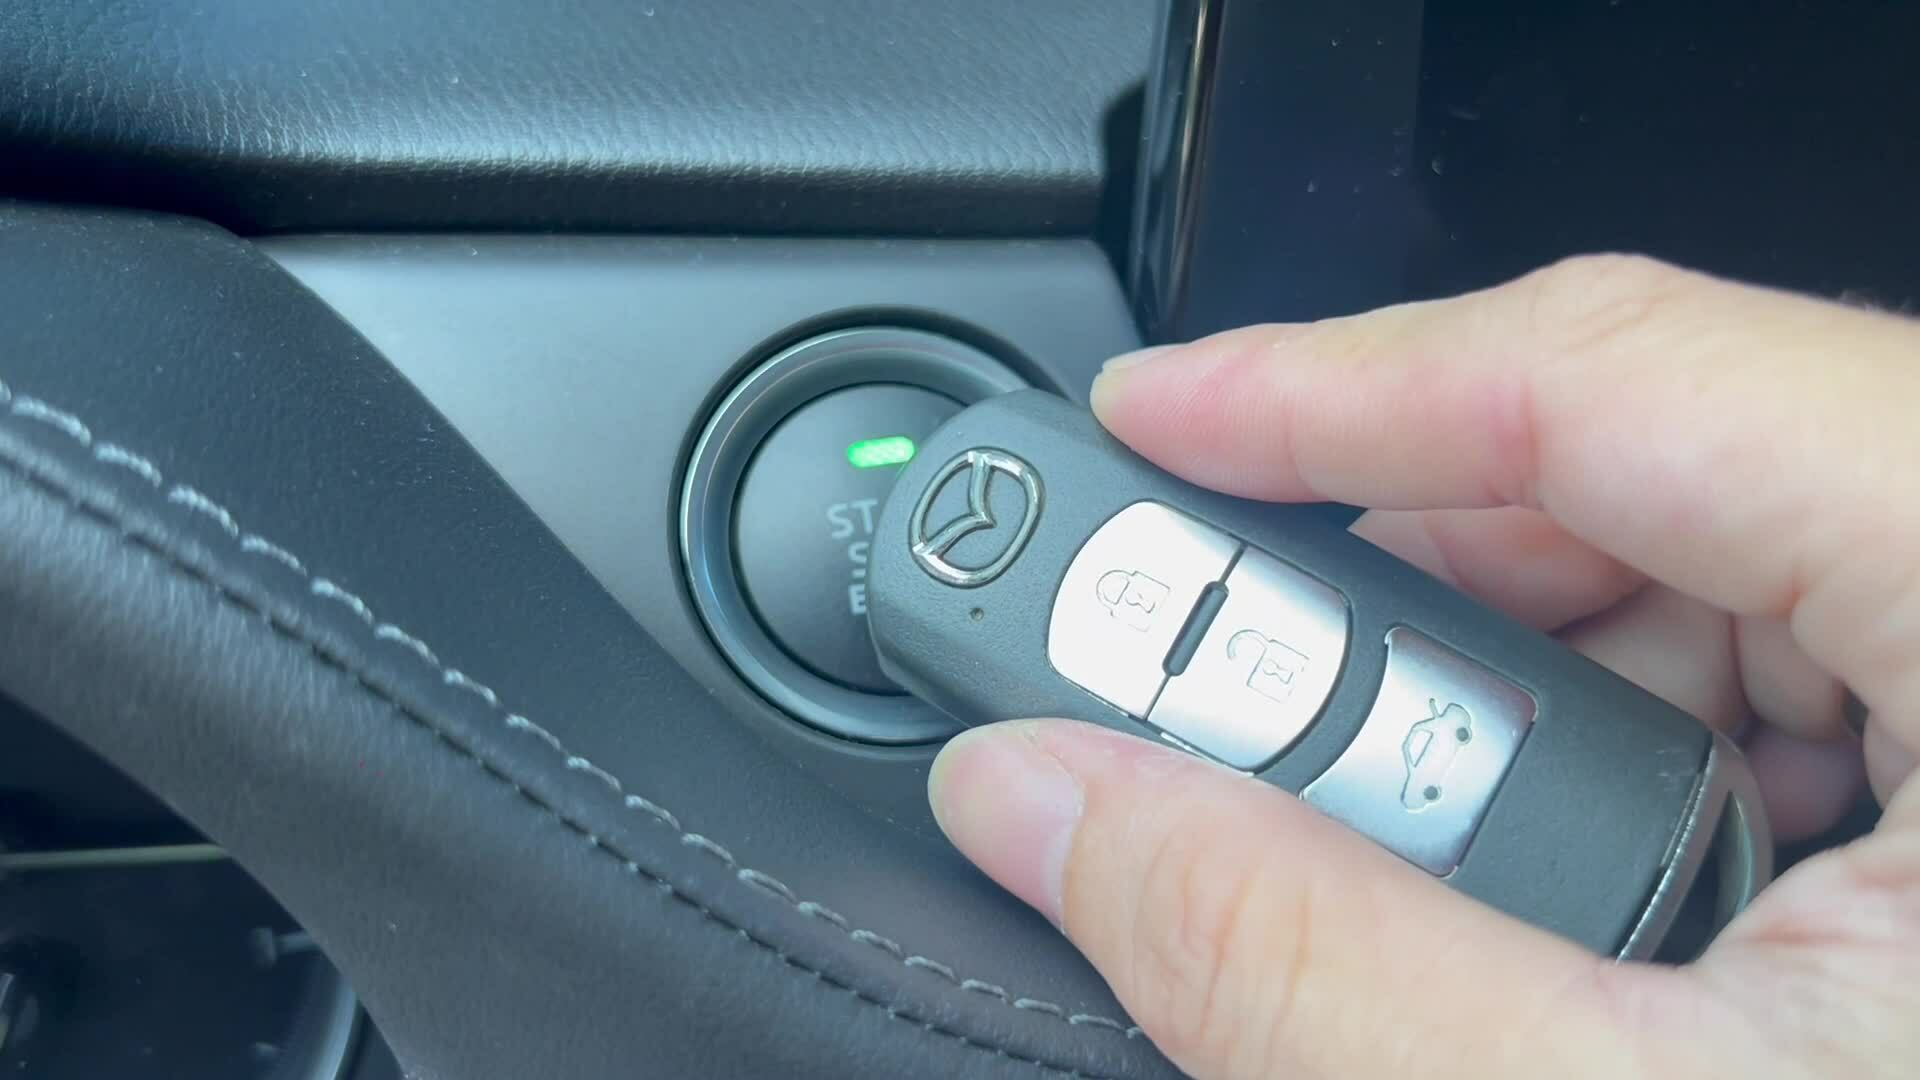 Cách mở cửa và khởi động xe khi chìa thông minh cạn pin